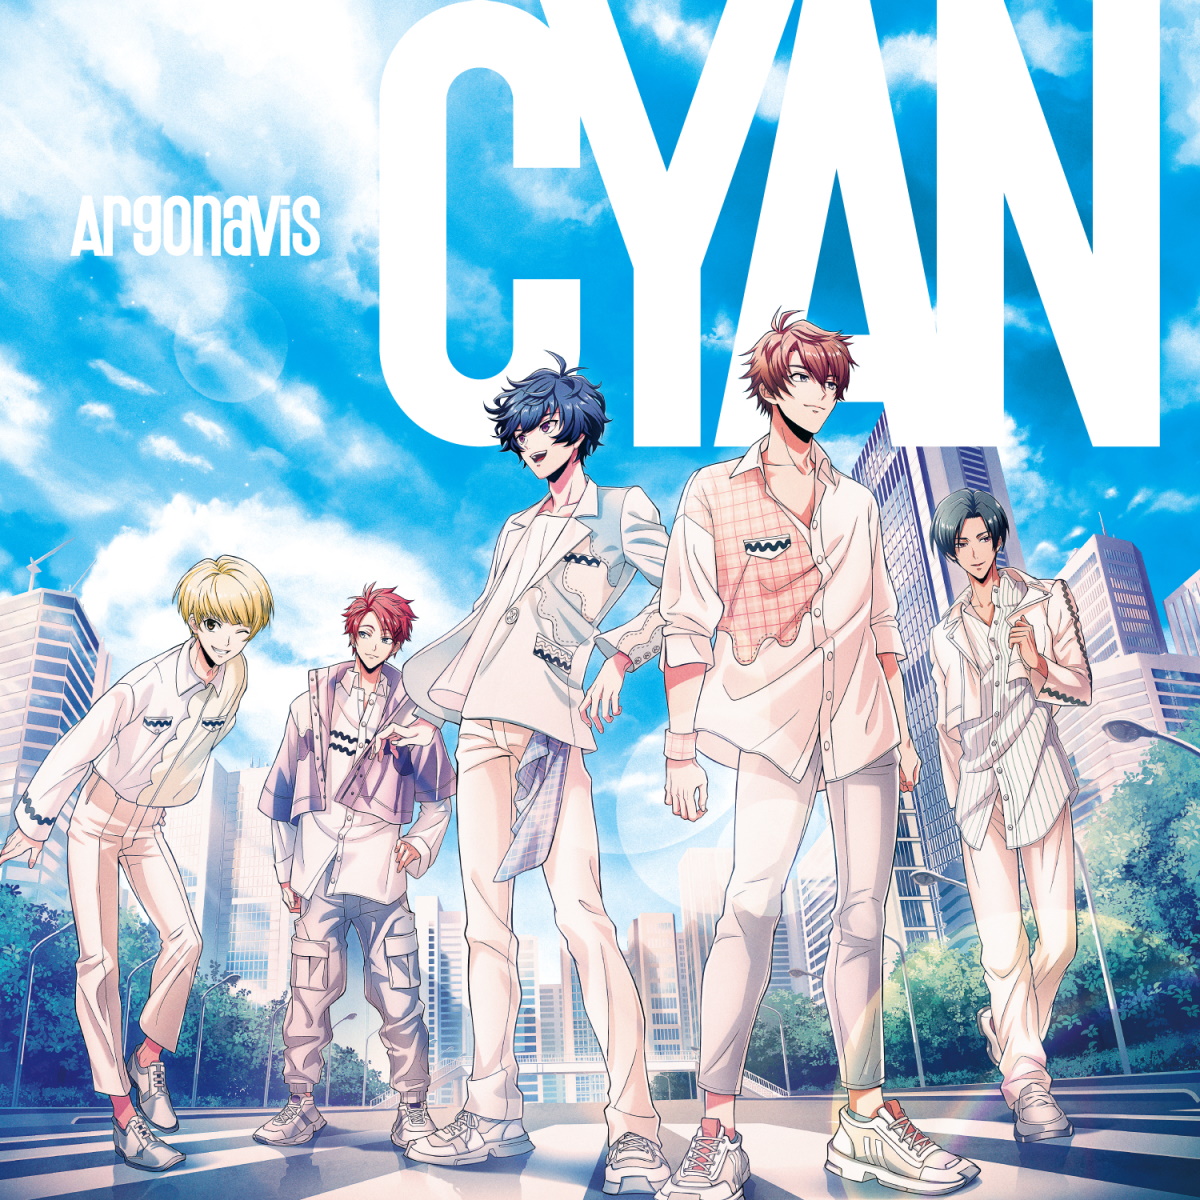 Cover for『Argonavis - Kokoro wo Utaitai』from the release『CYAN』